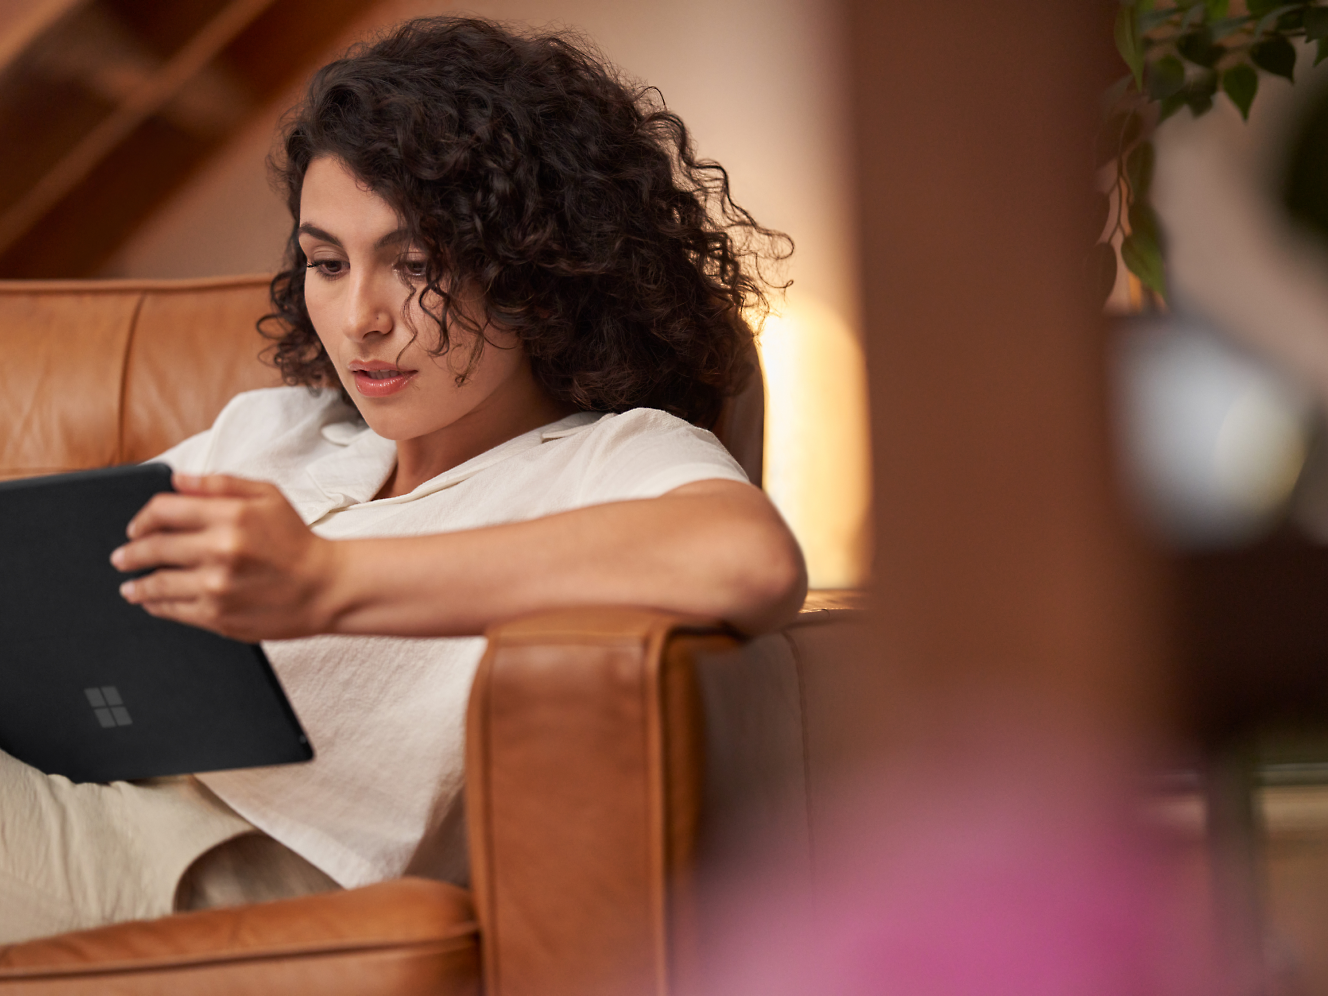 곱슬머리의 한 여성이 실내 갈색 가죽 안락의자에 앉아 태블릿으로 열심히 책을 읽고 있습니다.